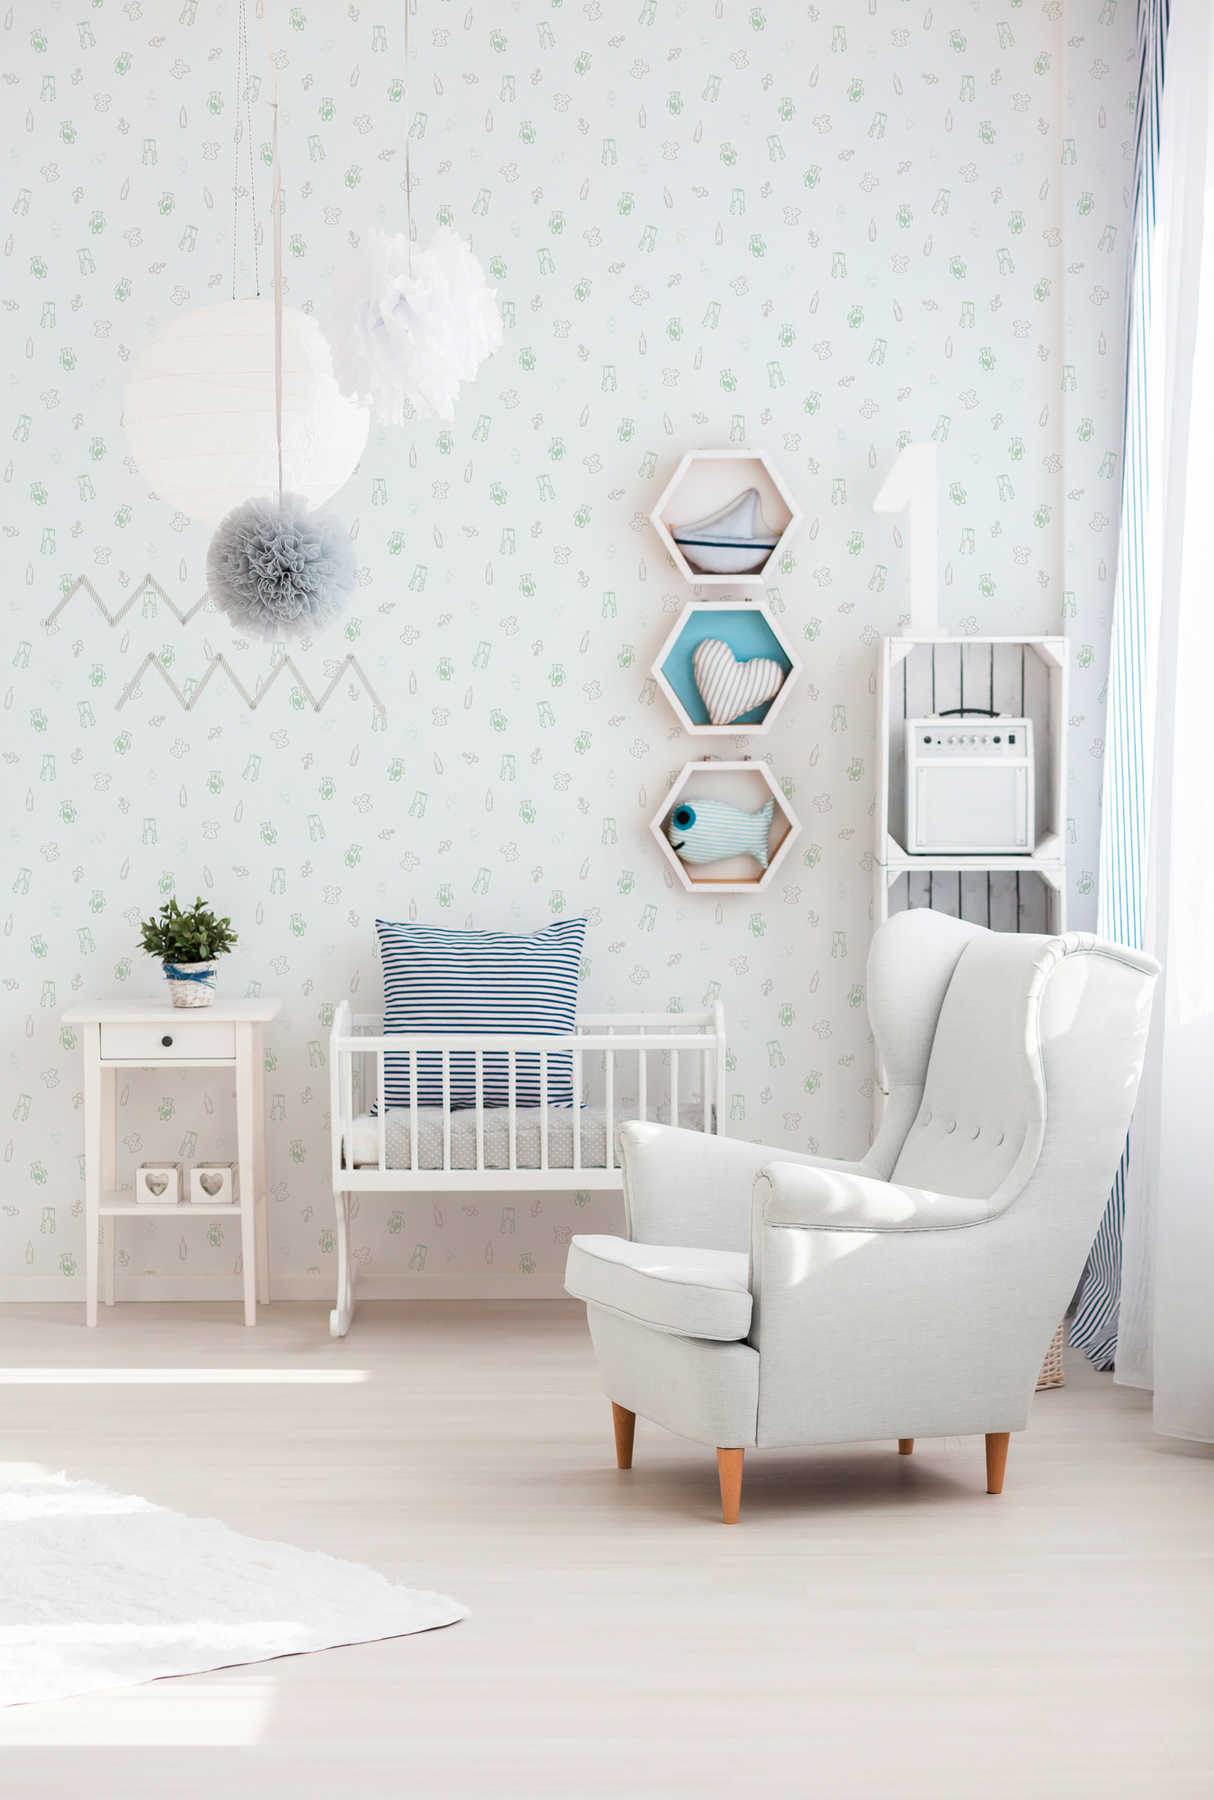             schattig babykamer behang met kinderpatroon - wit, groen
        